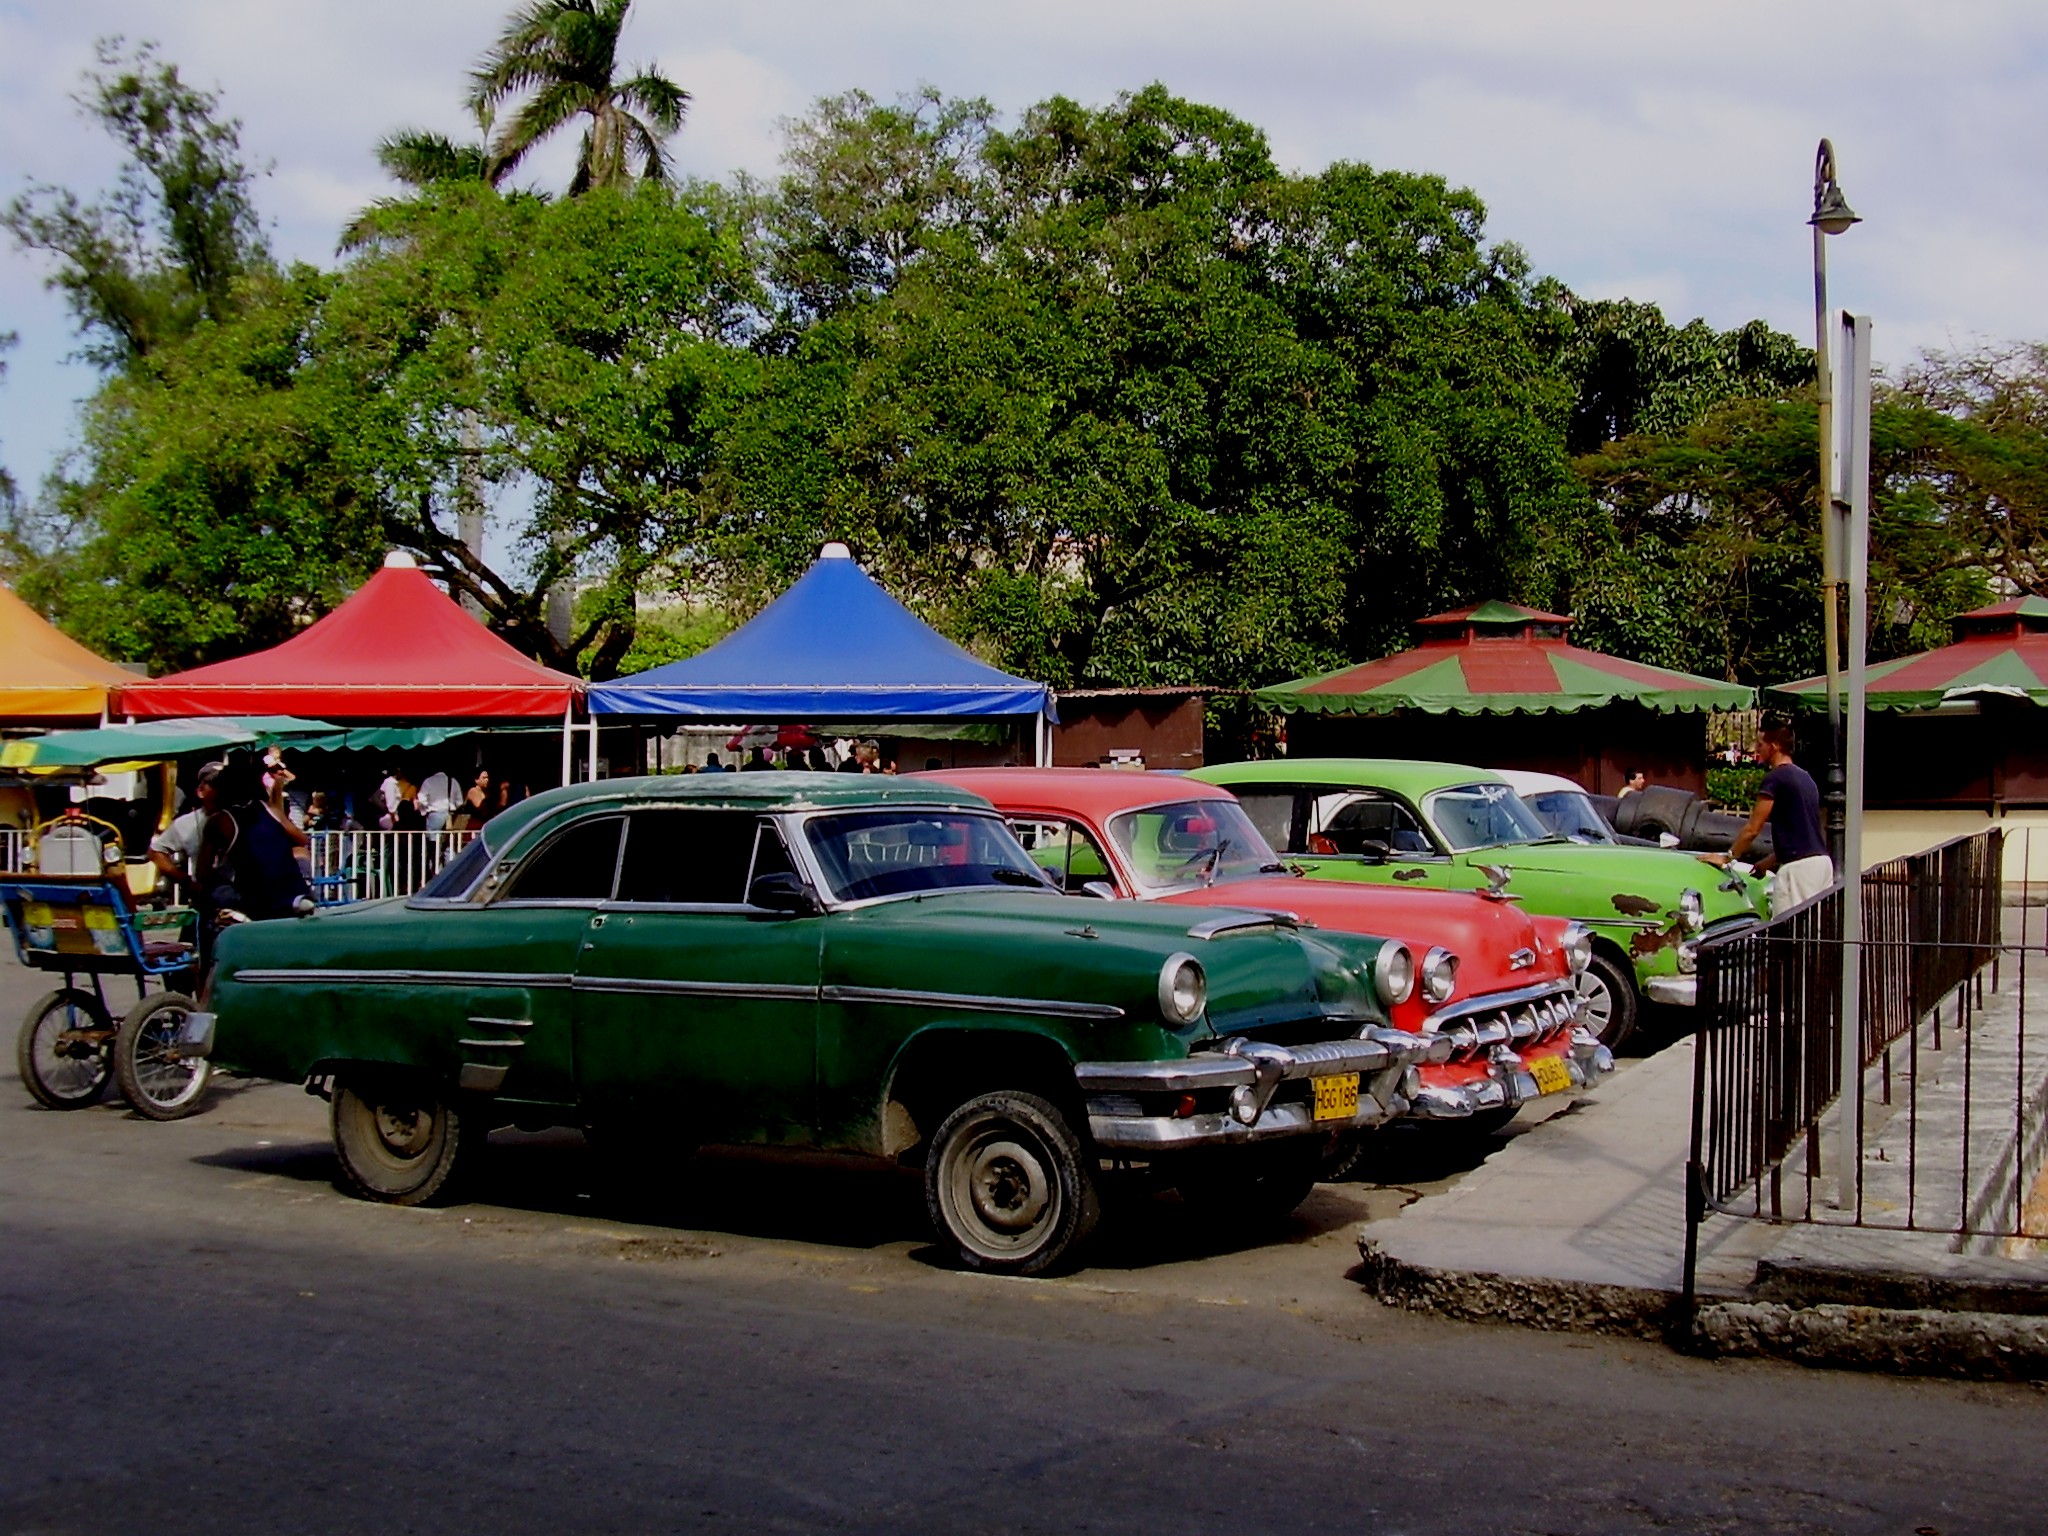 Фотографии Кубинского транспорта (443 фото) (1 часть) 